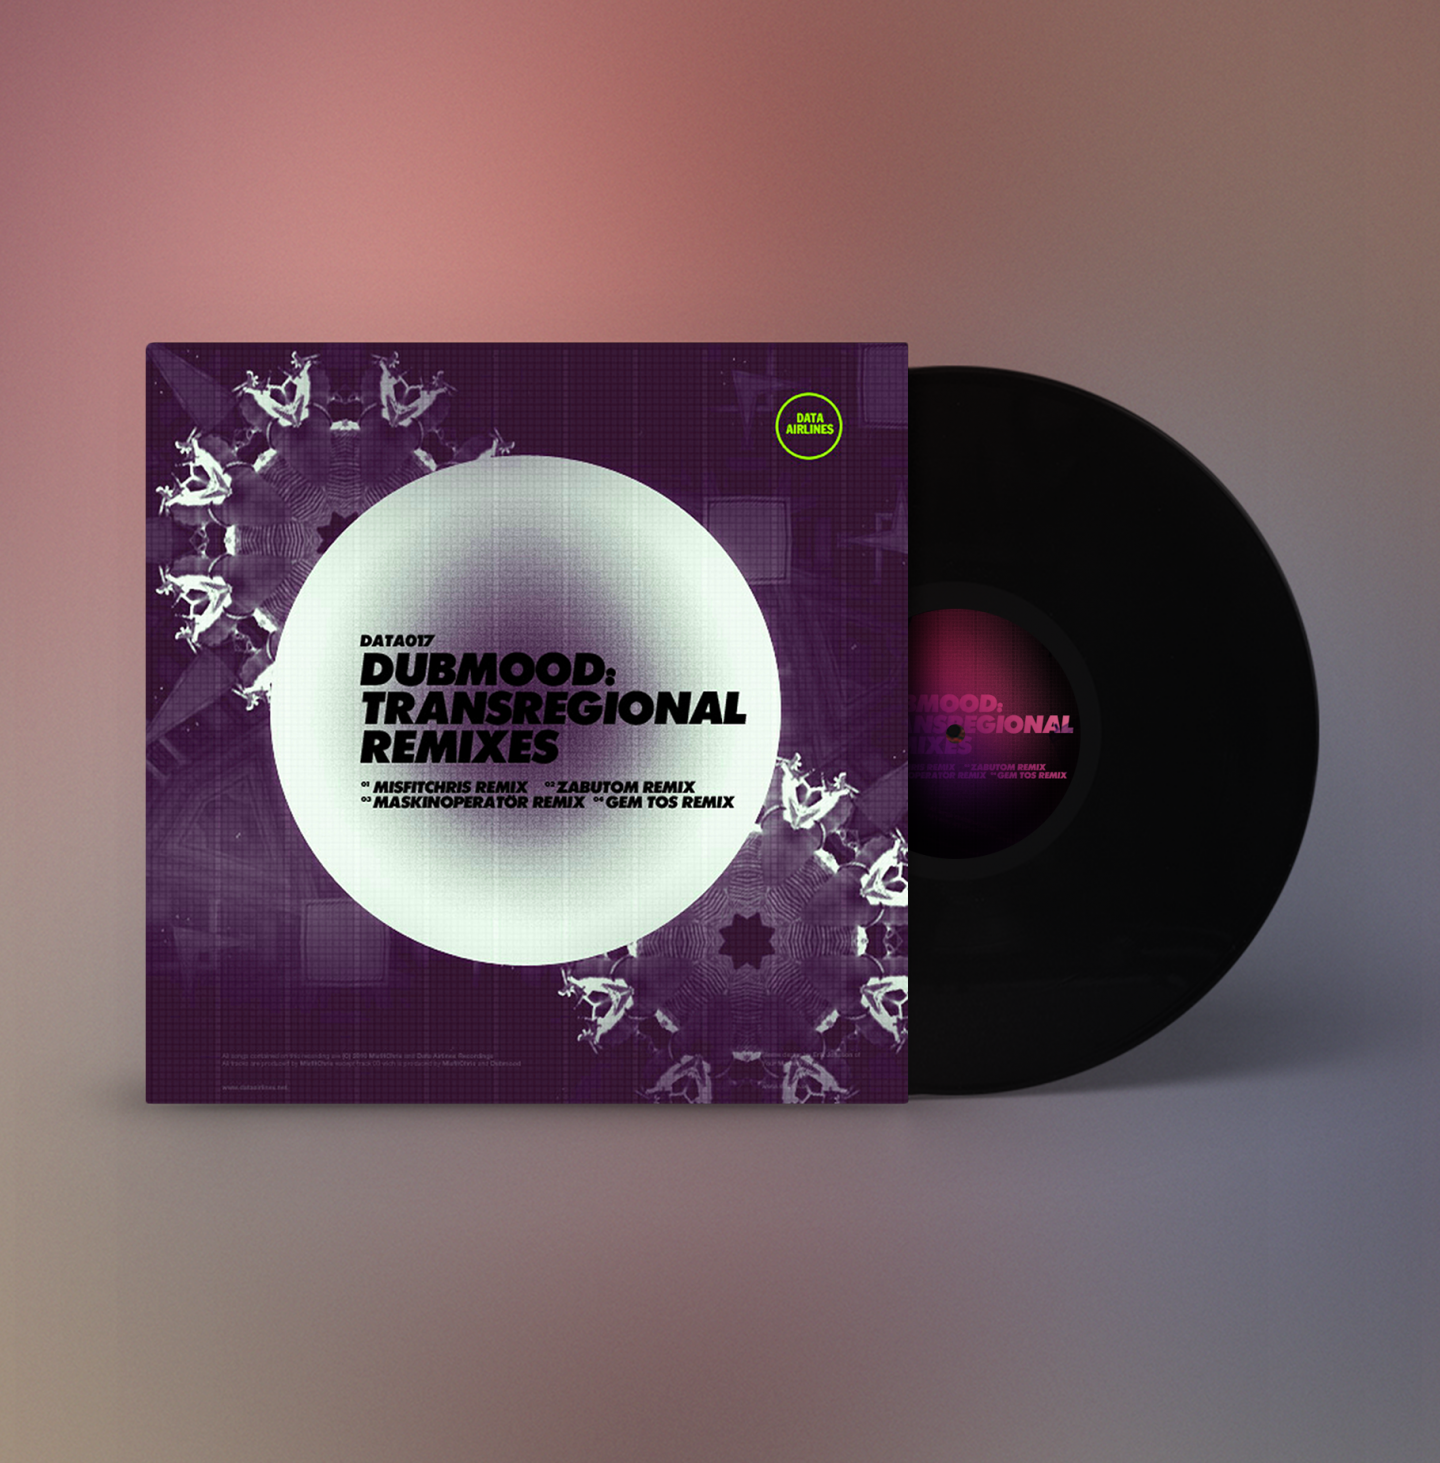 Dubmood — Transregional Remixes